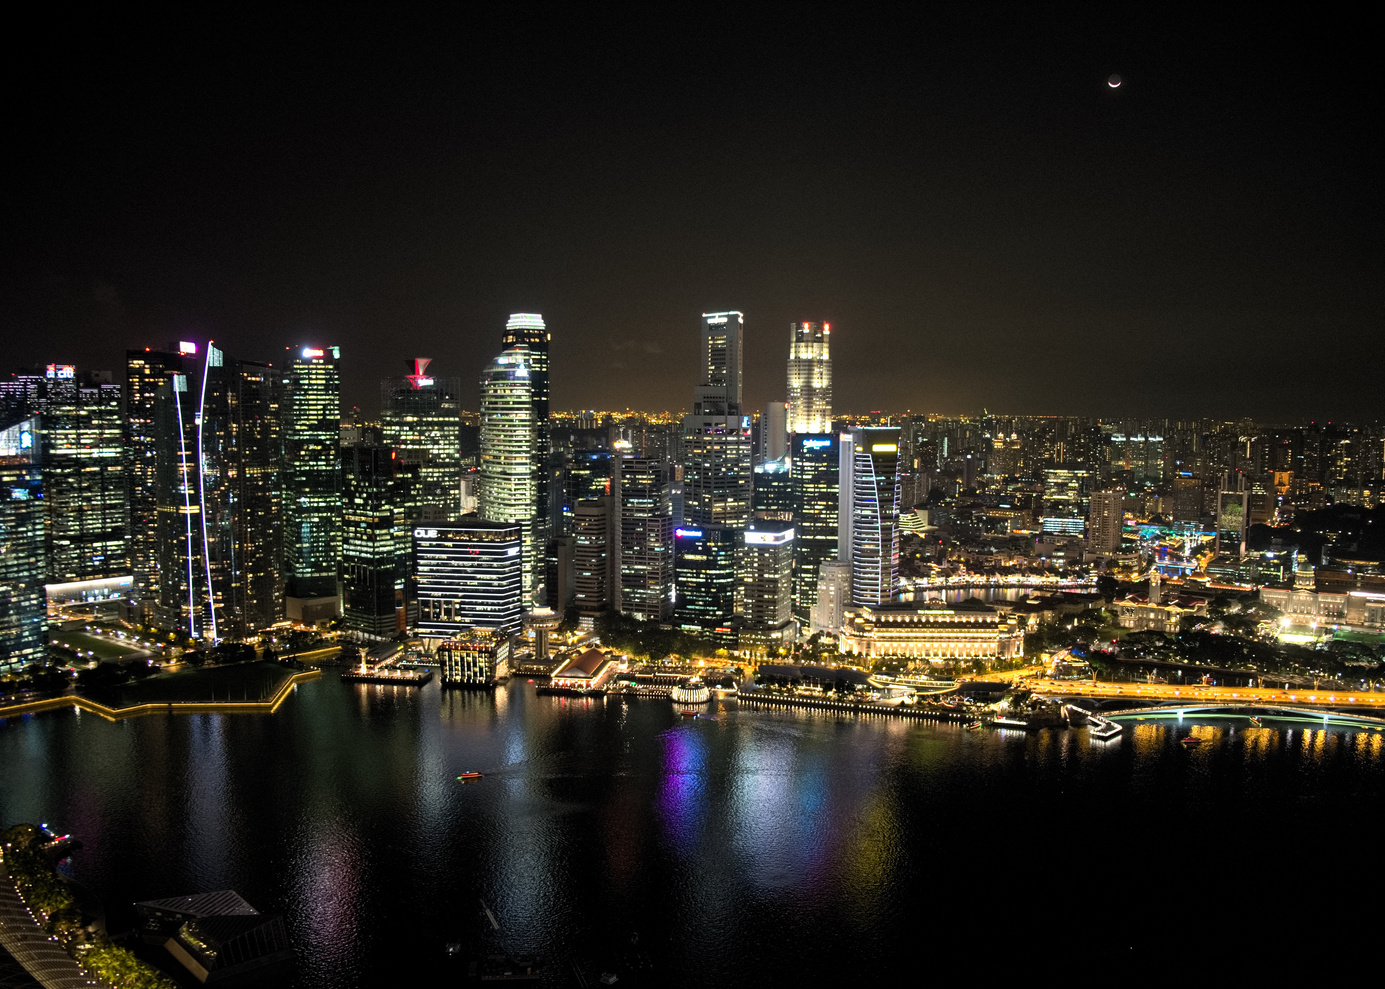 Night Scenes in Singapore